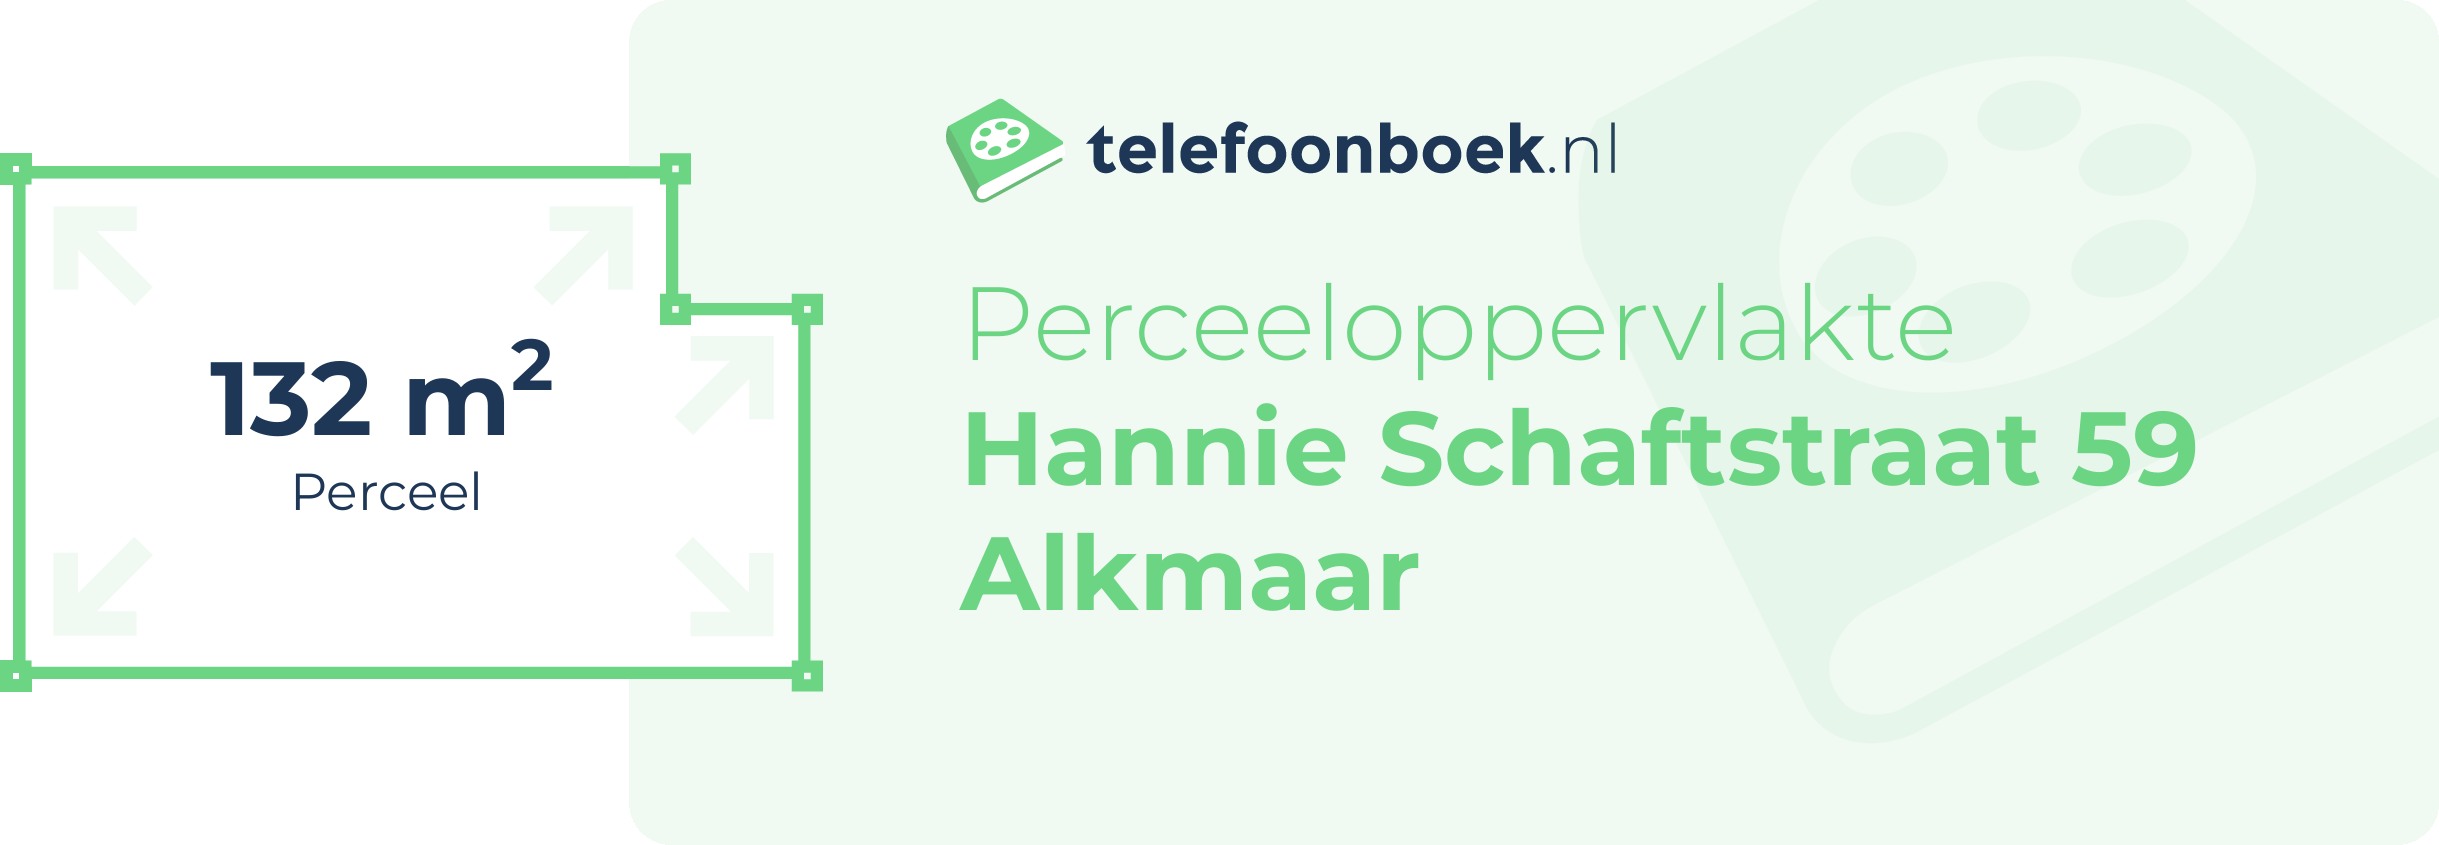 Perceeloppervlakte Hannie Schaftstraat 59 Alkmaar